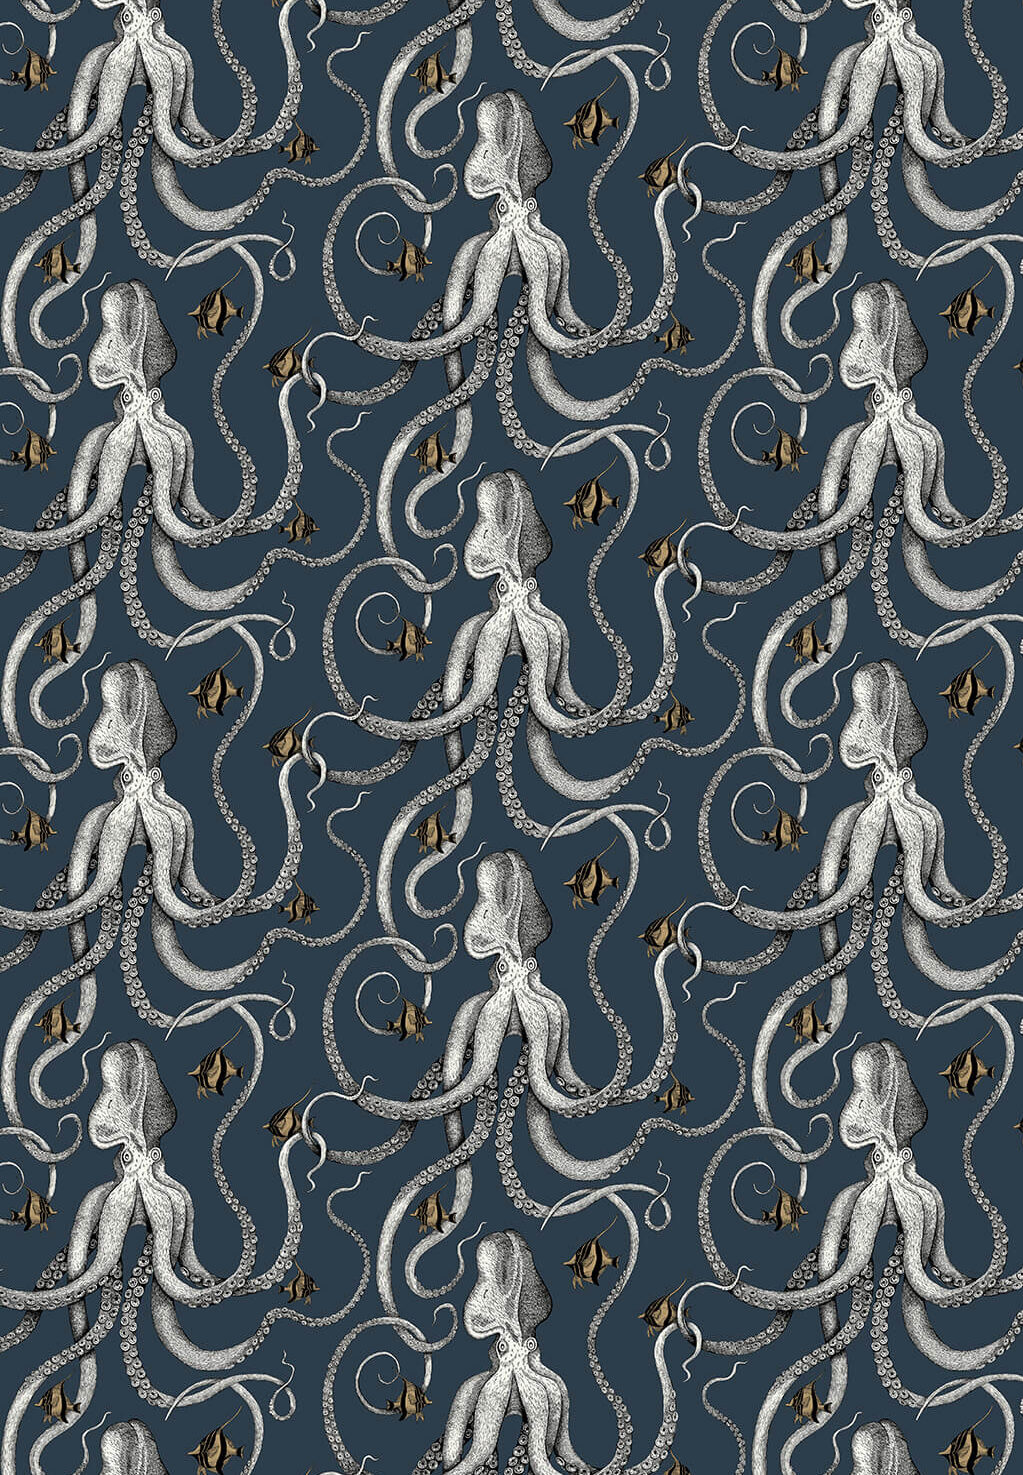 Sea Life Wallpaper